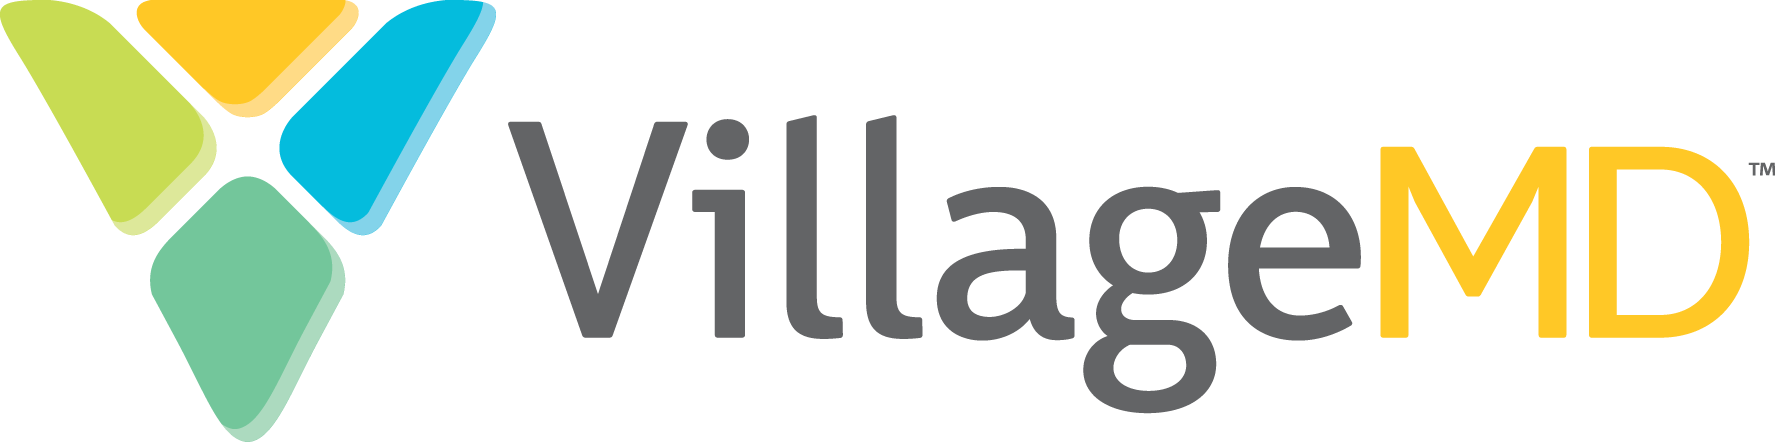 VillageMD Logo Hor CMYK RT